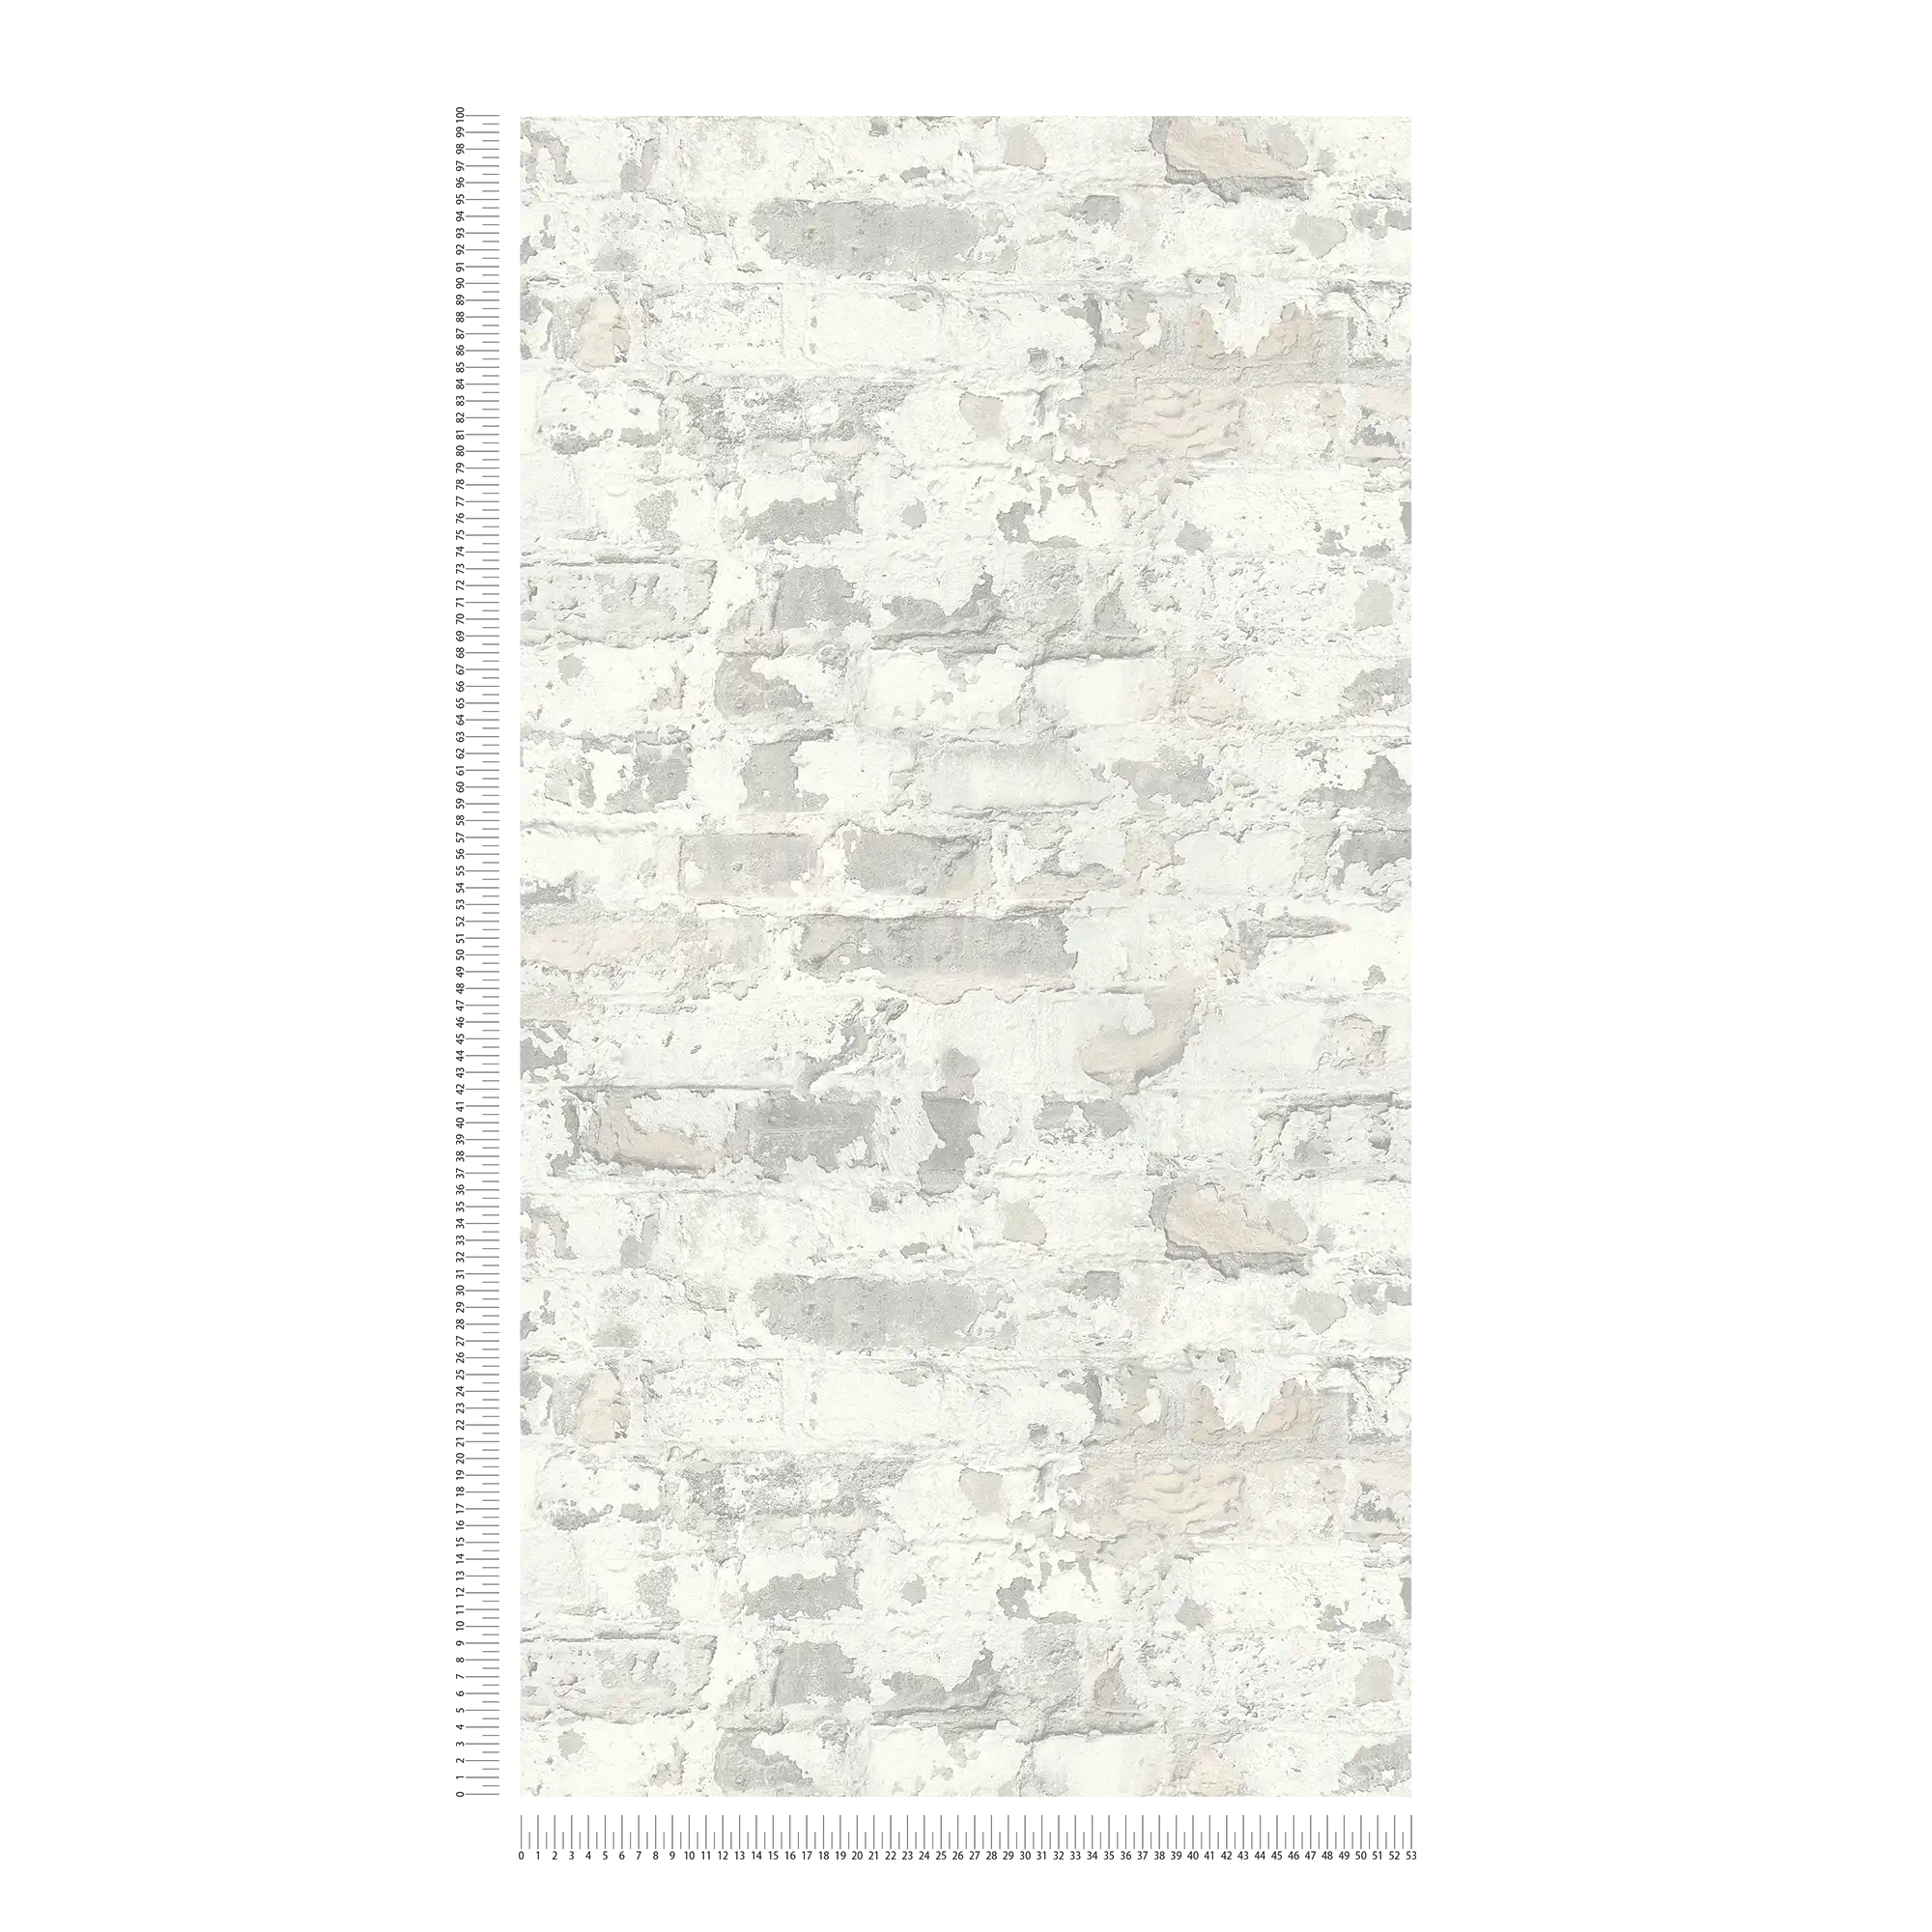             Baksteenbehang in landelijke stijl - grijs, wit
        